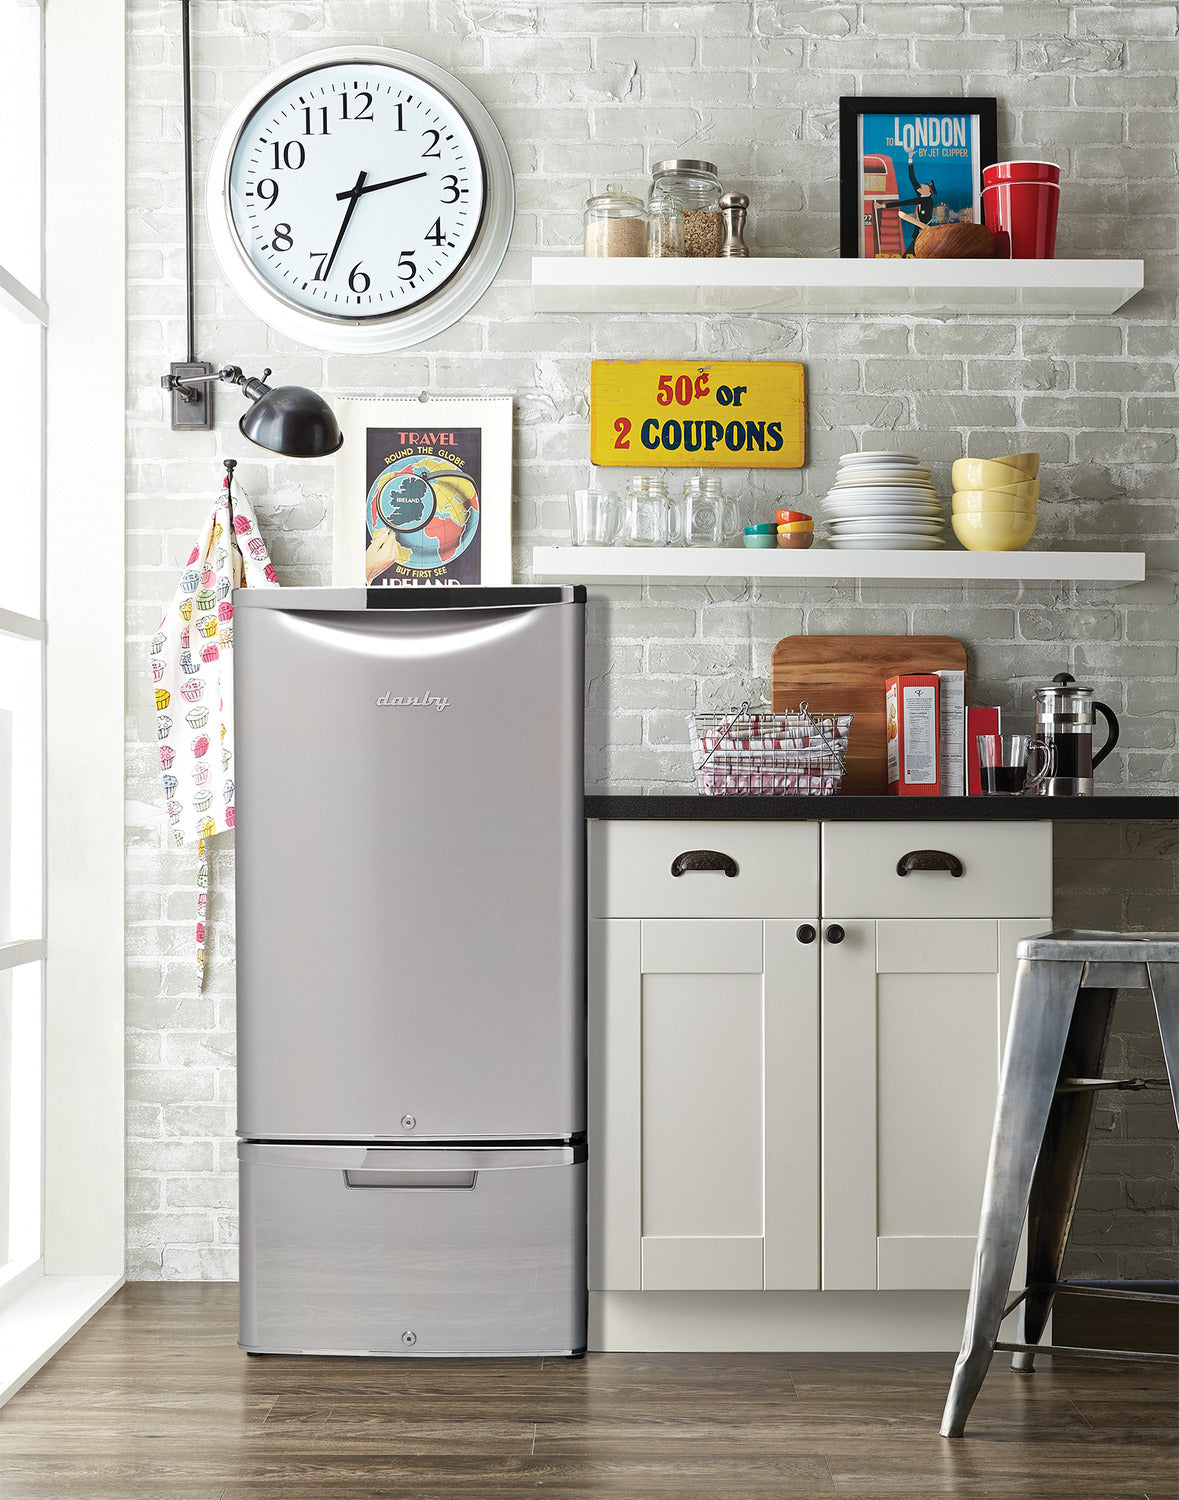 Danby Silver Compact Refrigerator (4.4 Cu. Ft.) - DAR044A6DDB